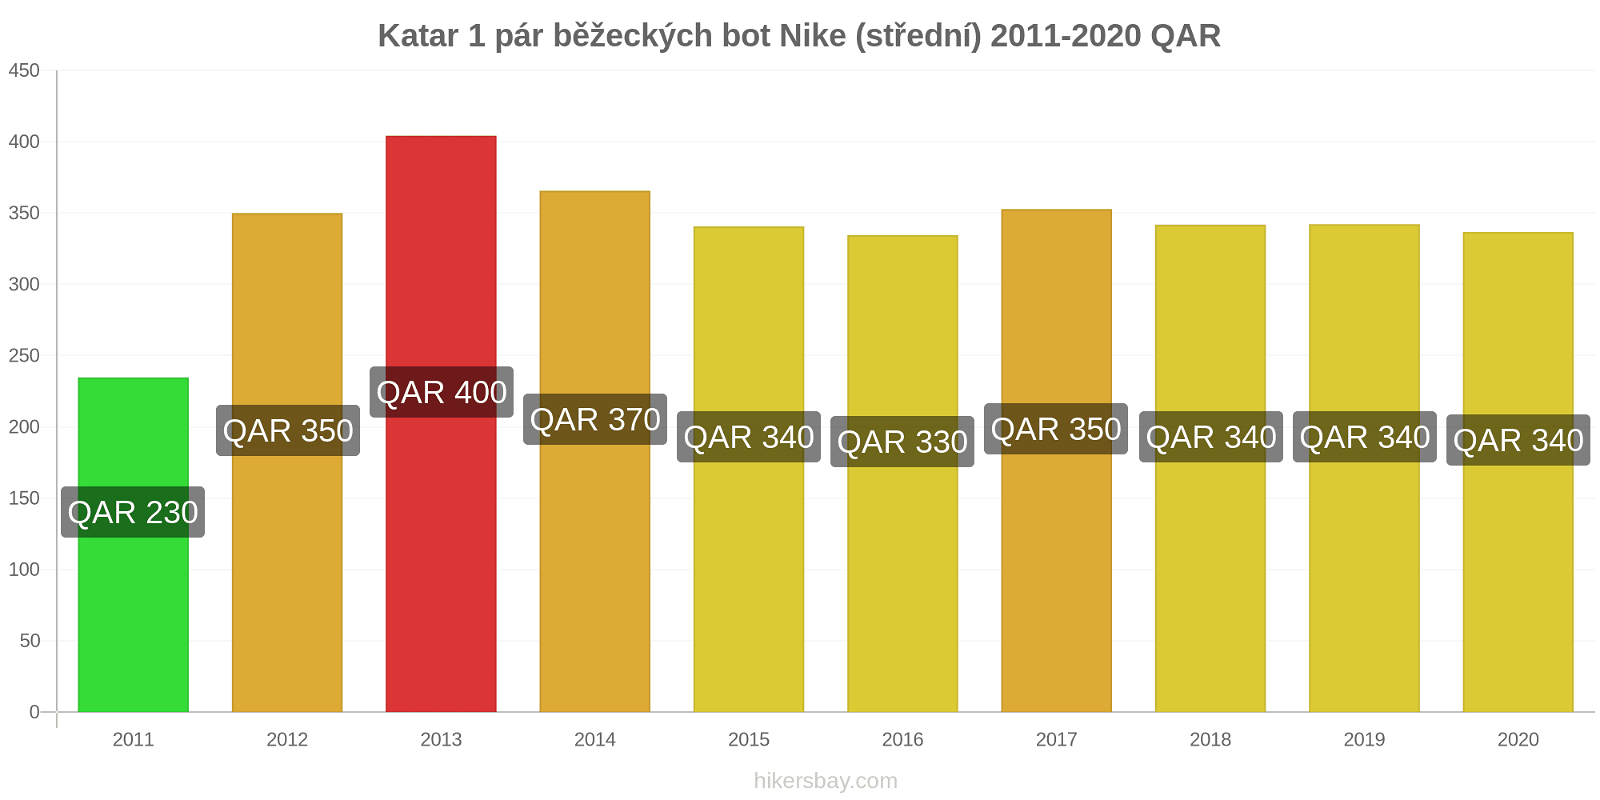 Katar změny cen 1 pár běžeckých bot Nike (střední) hikersbay.com